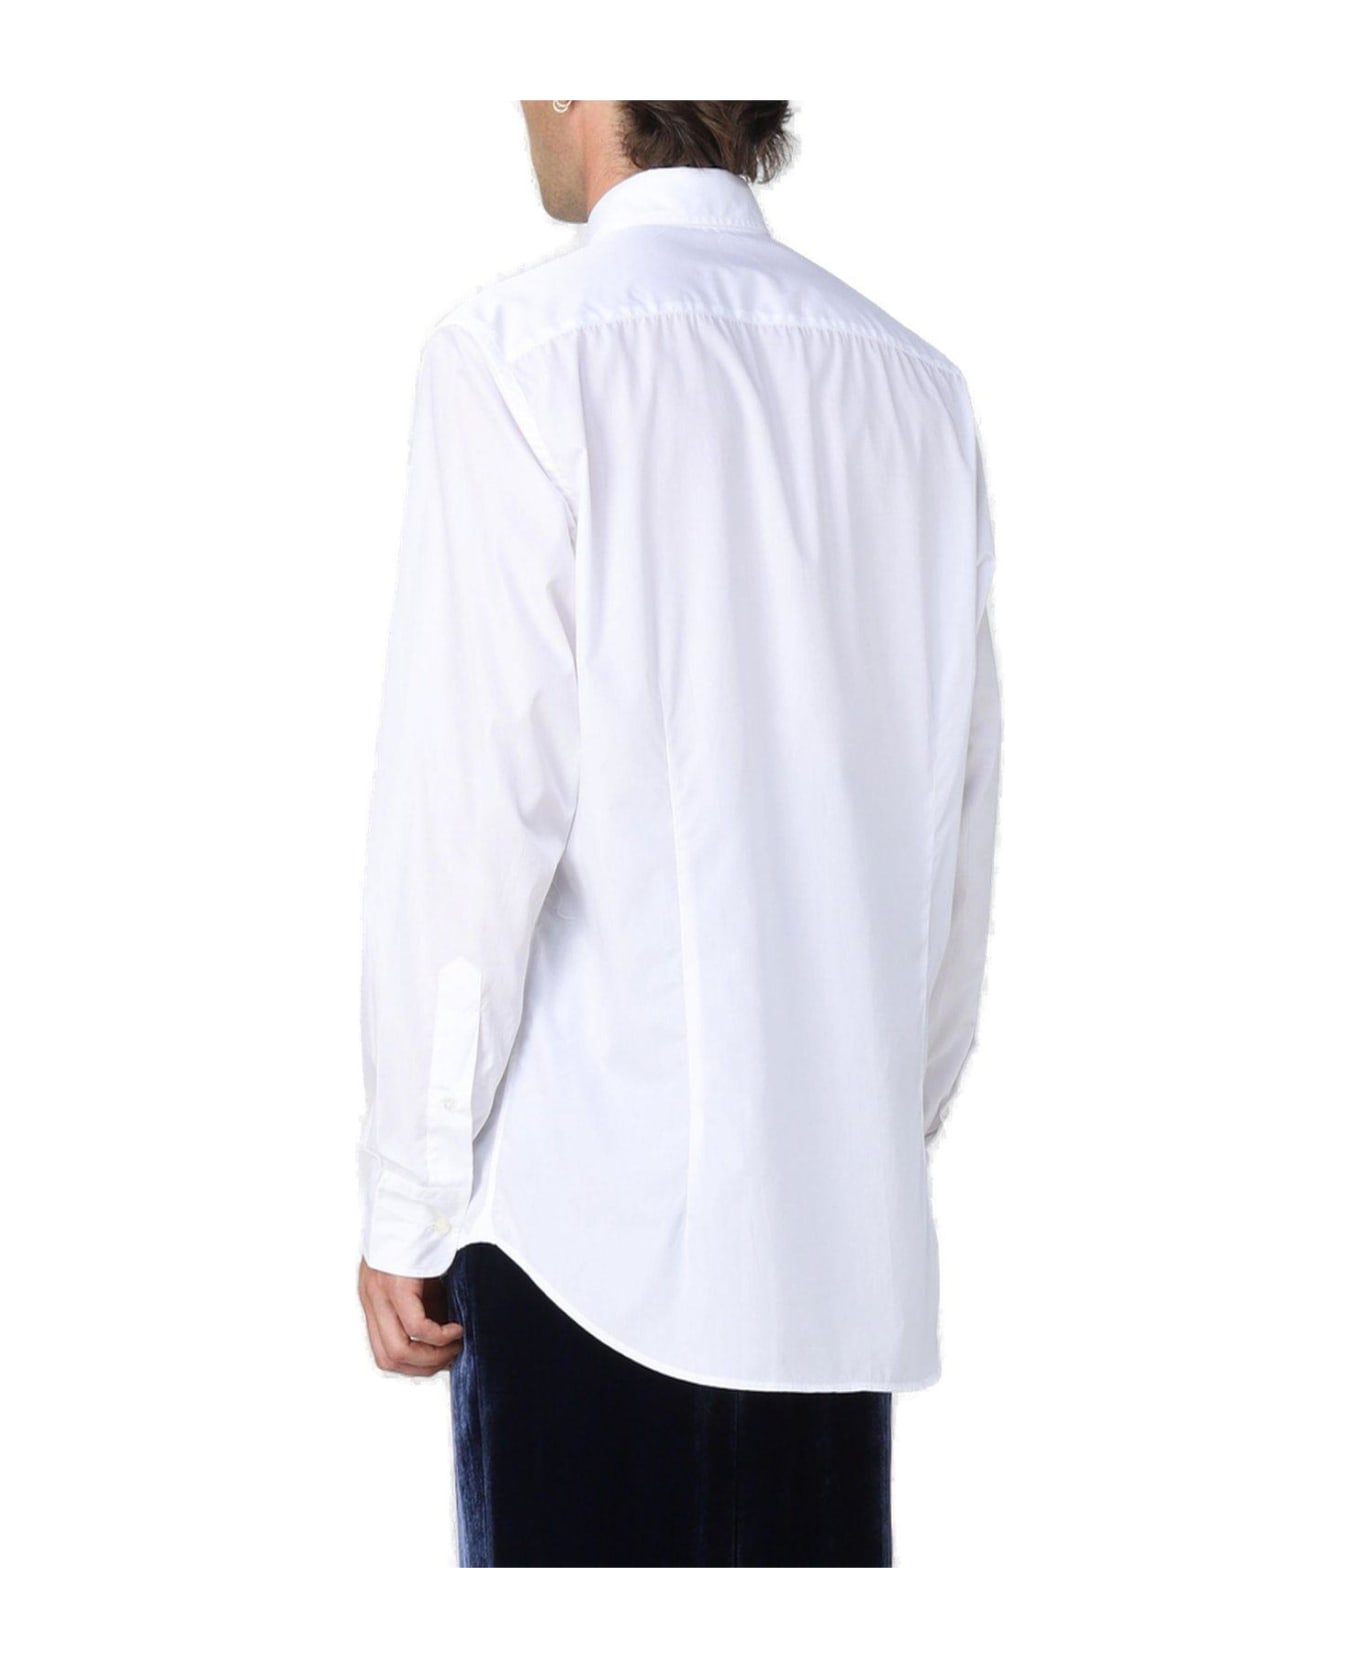 Etro Logo-embroidered Button-up Shirt Etro - WHITE シャツ